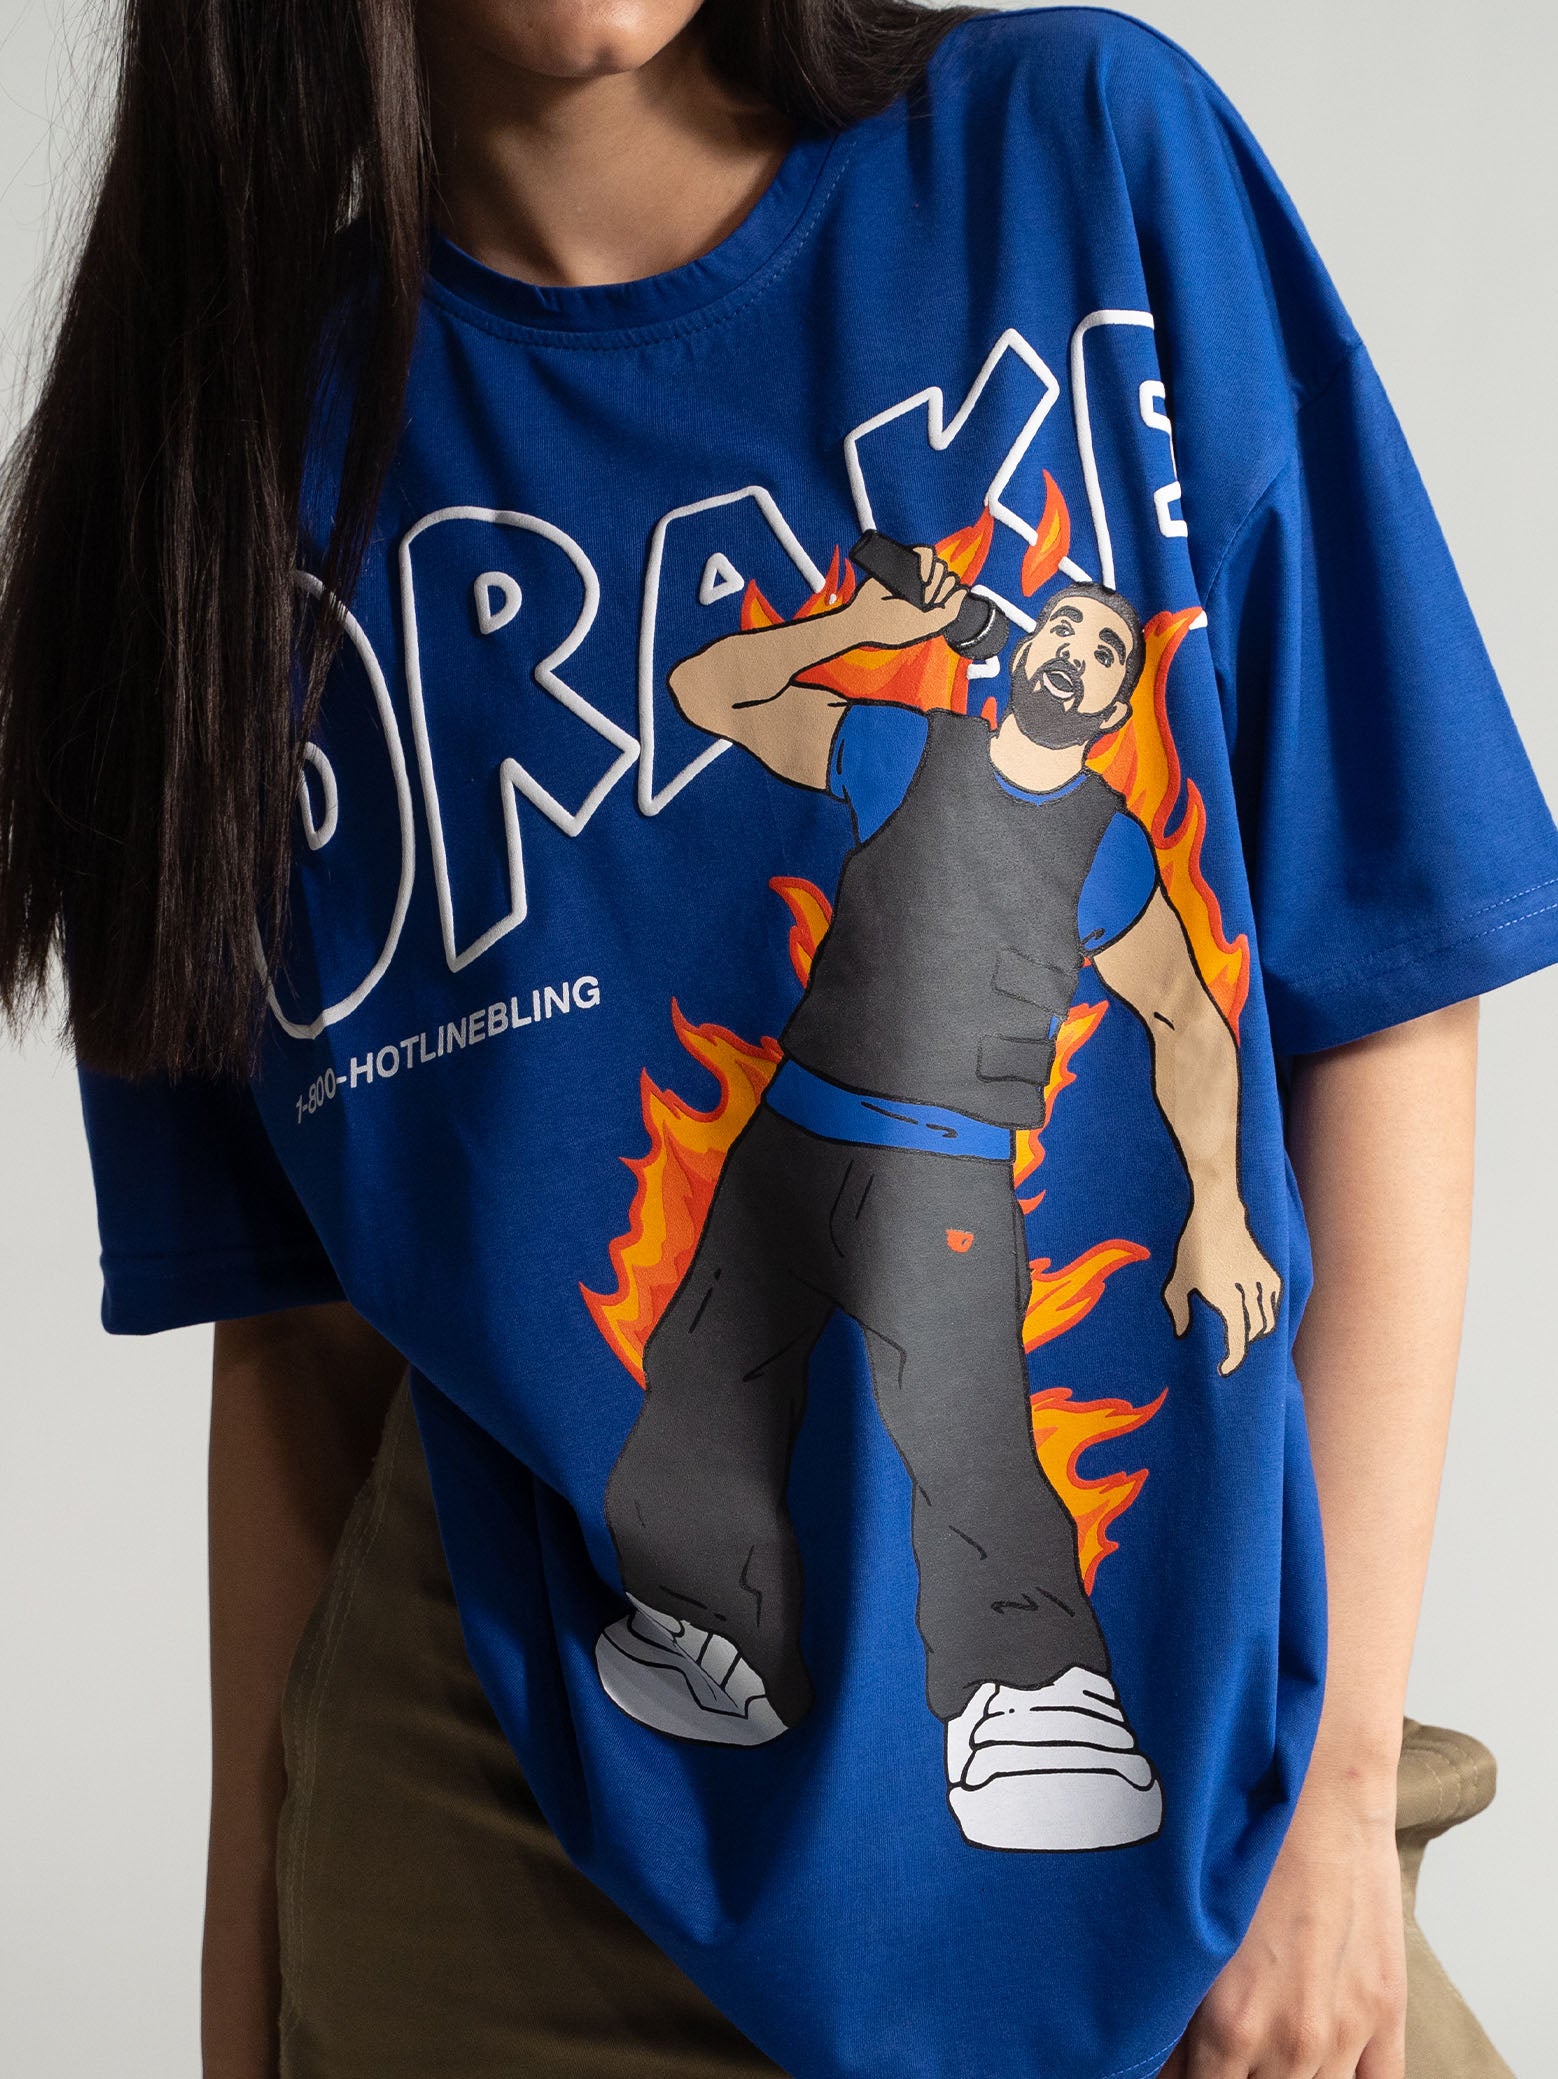 Drake's Legacy